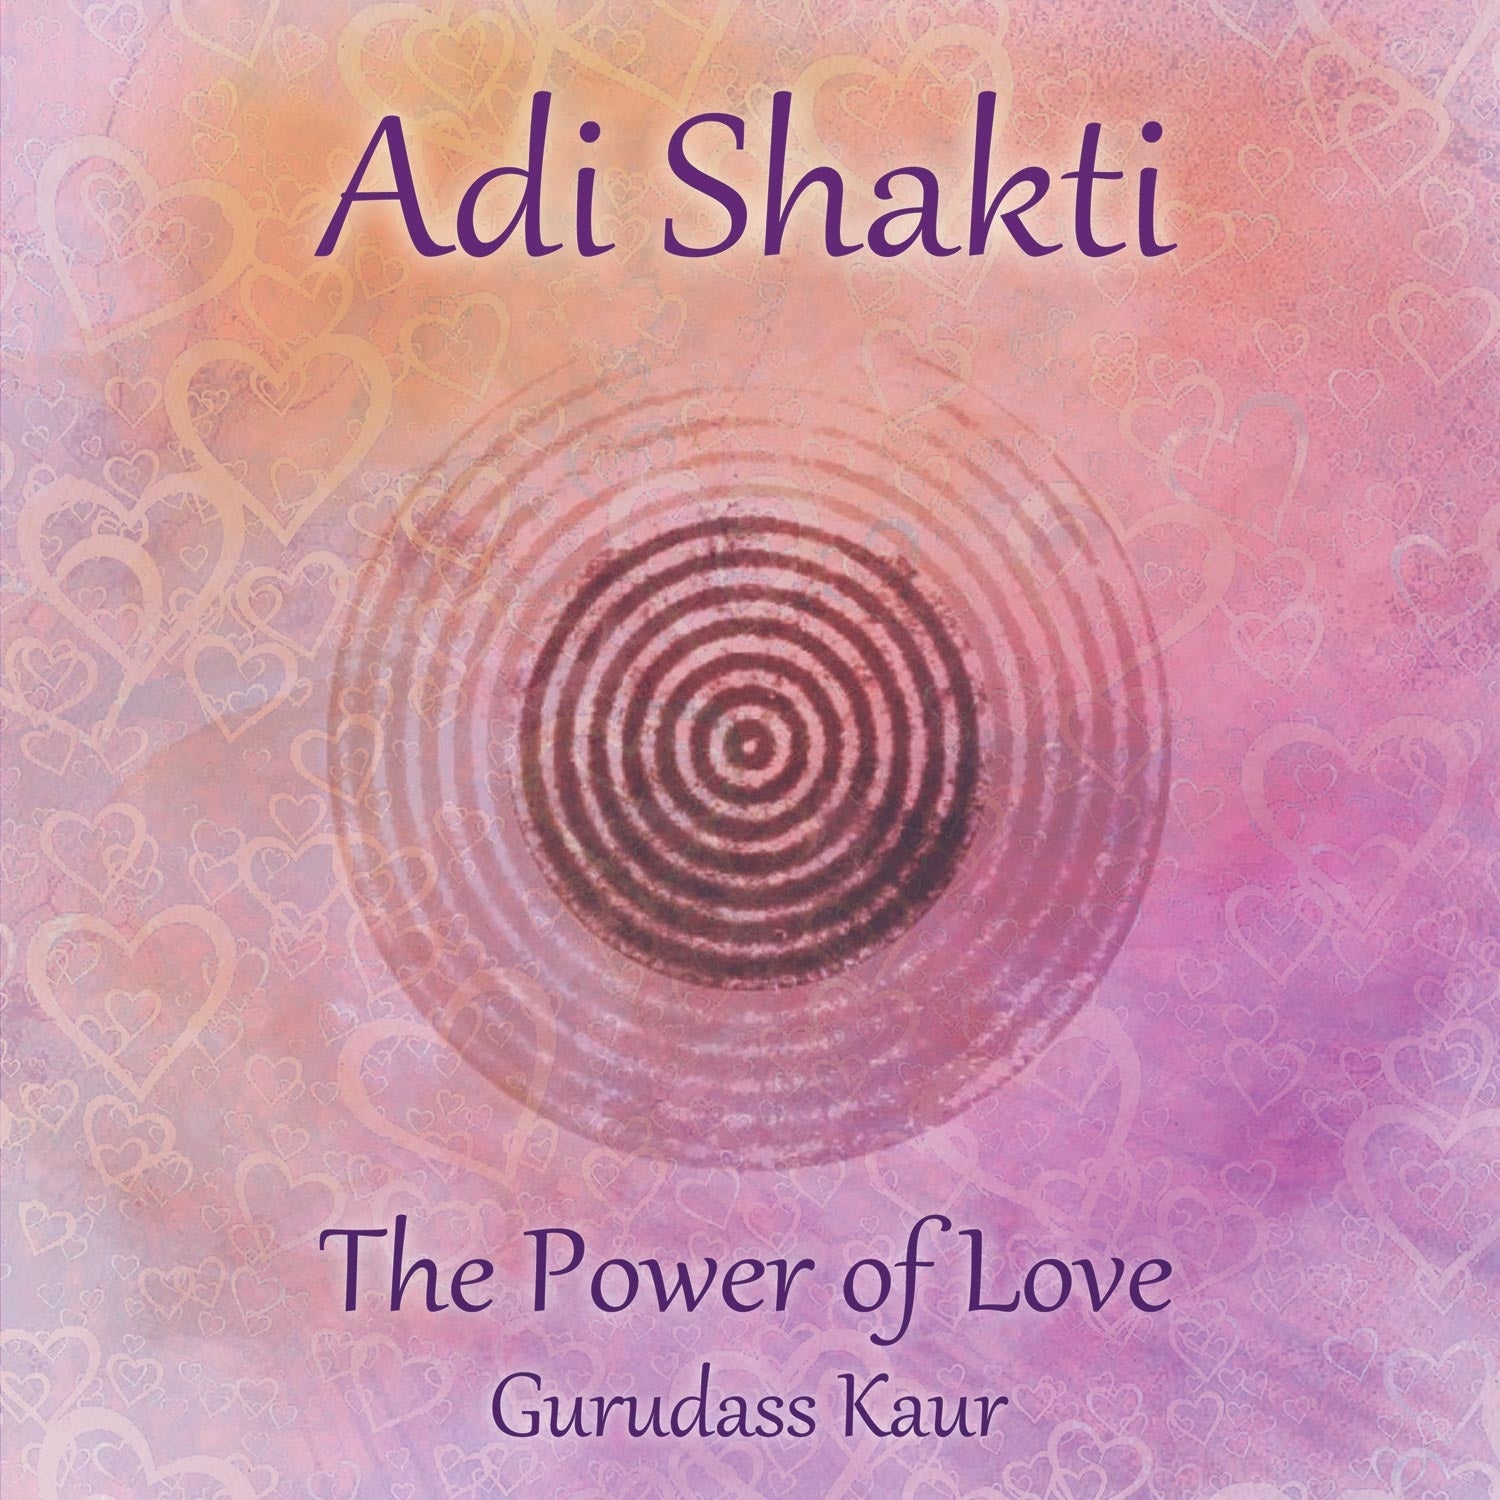 Adi Shakti, Power of Love - Gurudass Kaur complete